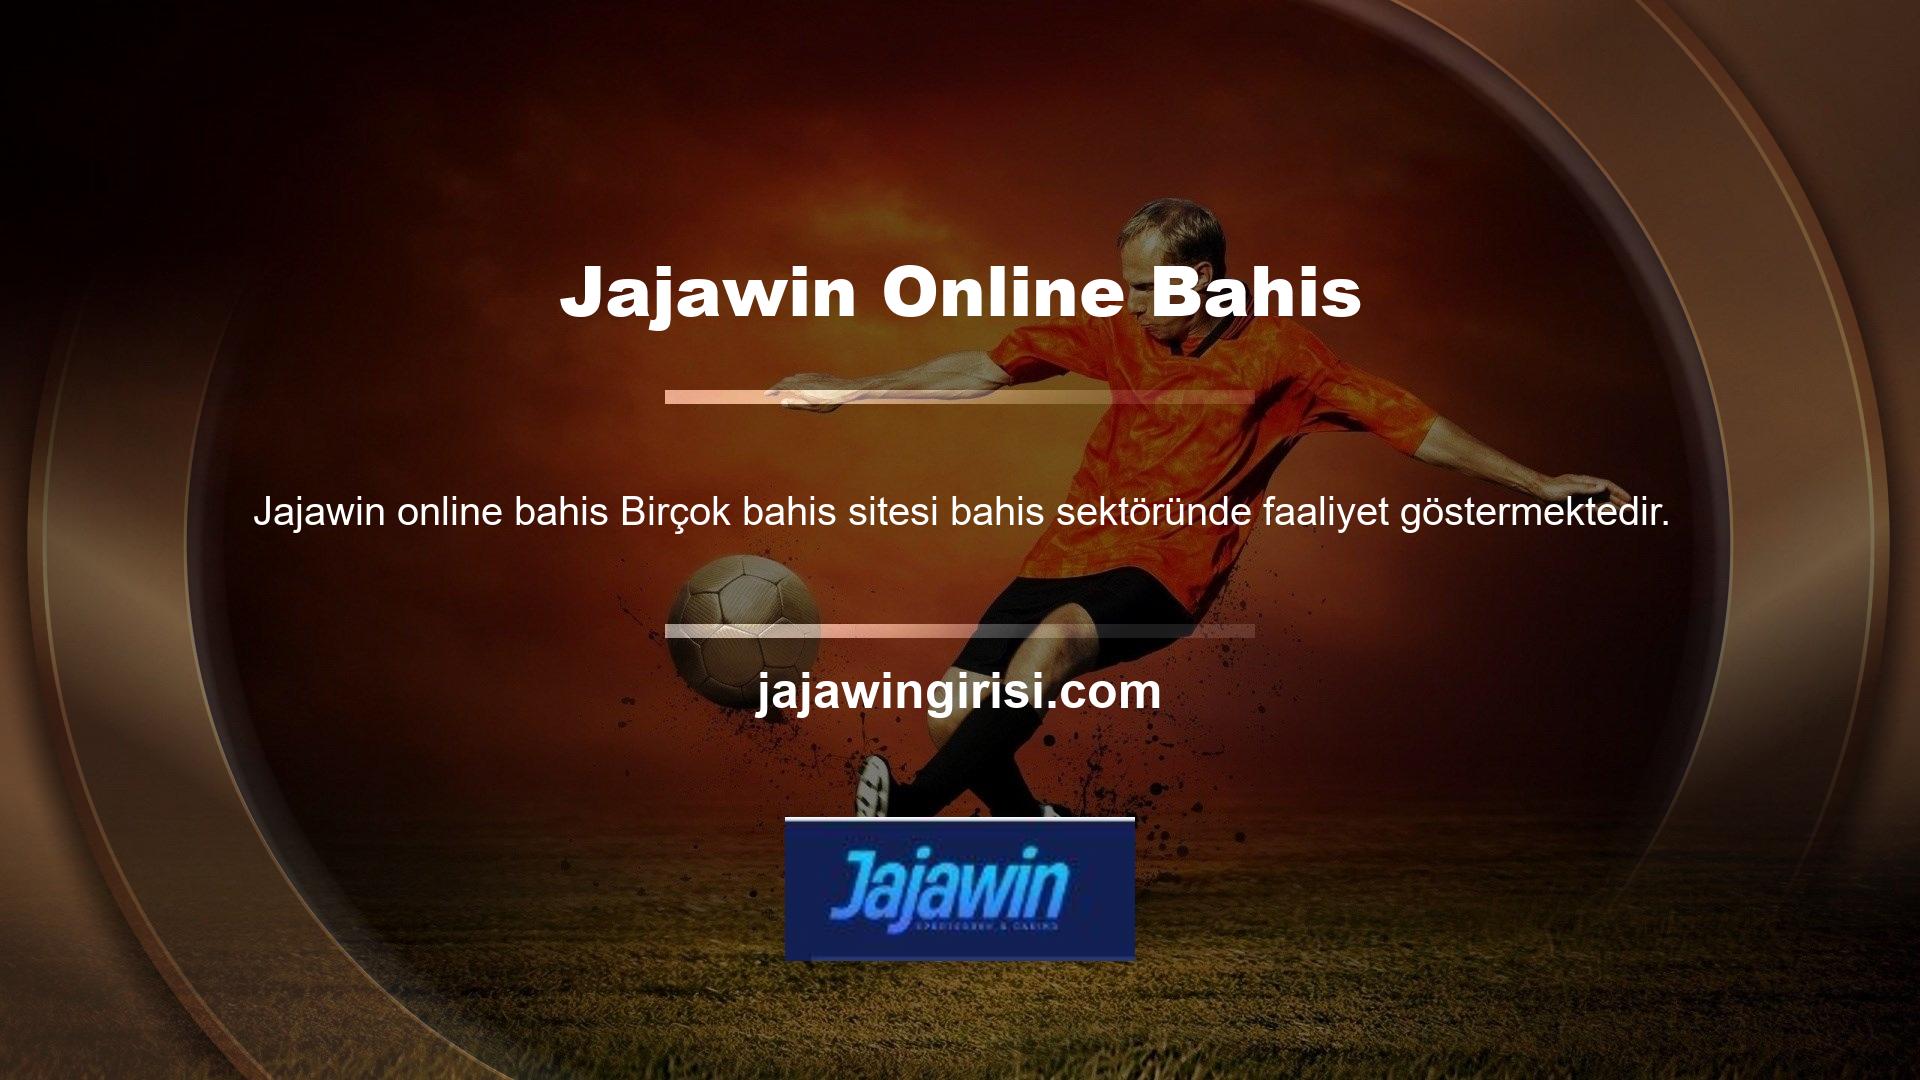 Bunlardan biri de Jajawin online bahis ve canlı casino sitesidir